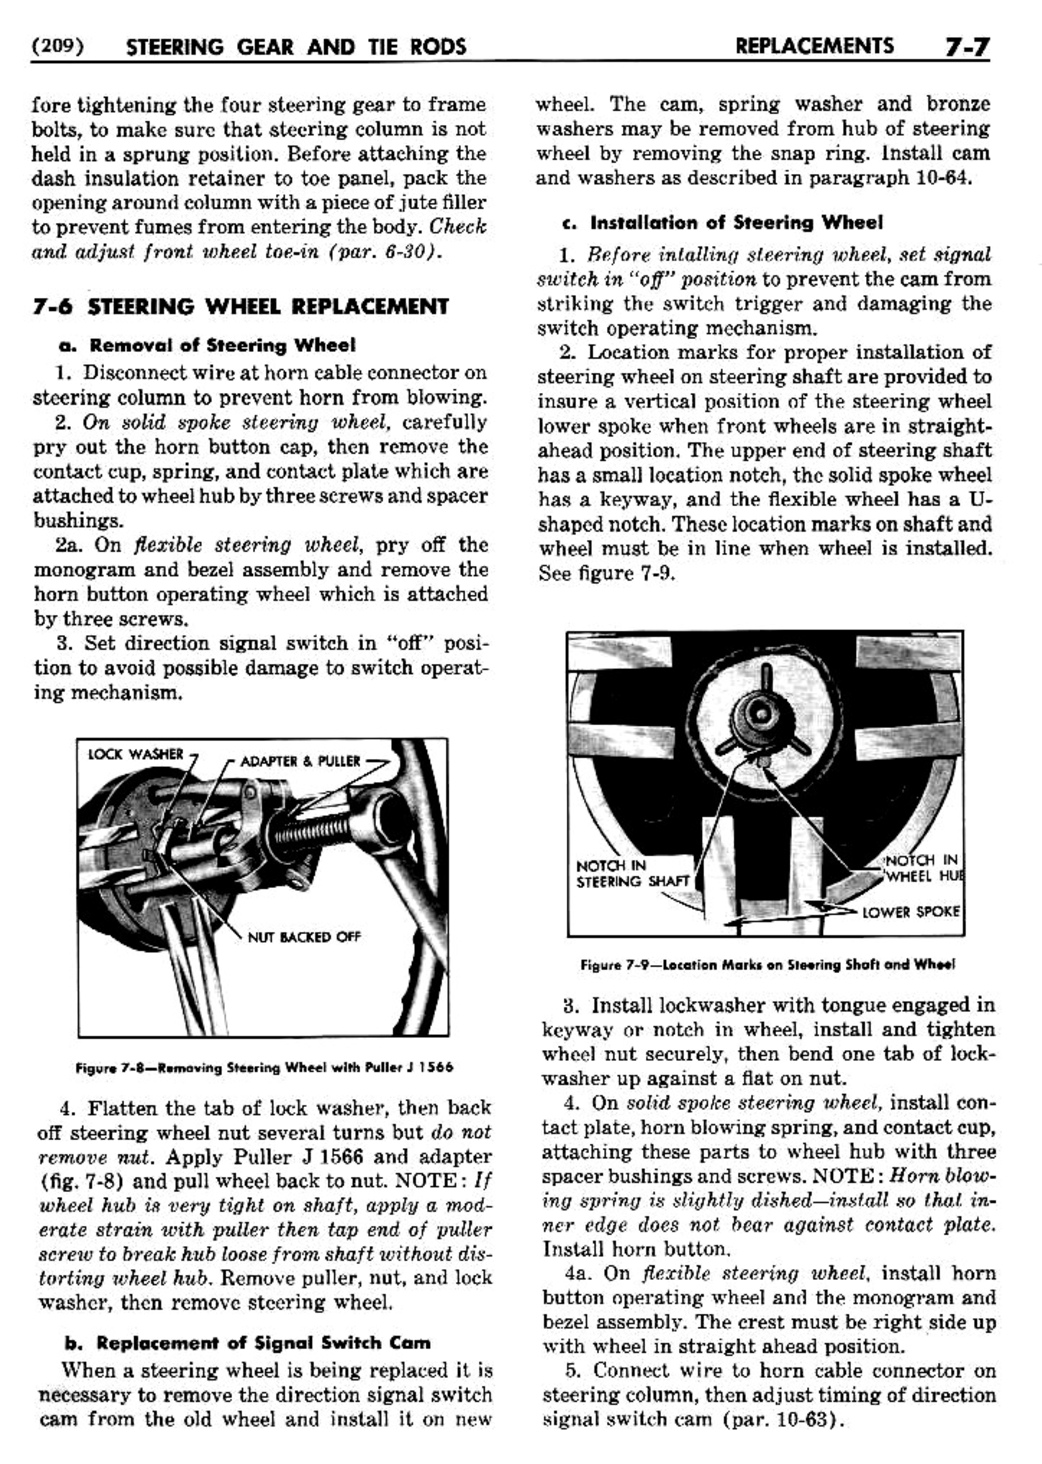 n_08 1950 Buick Shop Manual - Steering-007-007.jpg